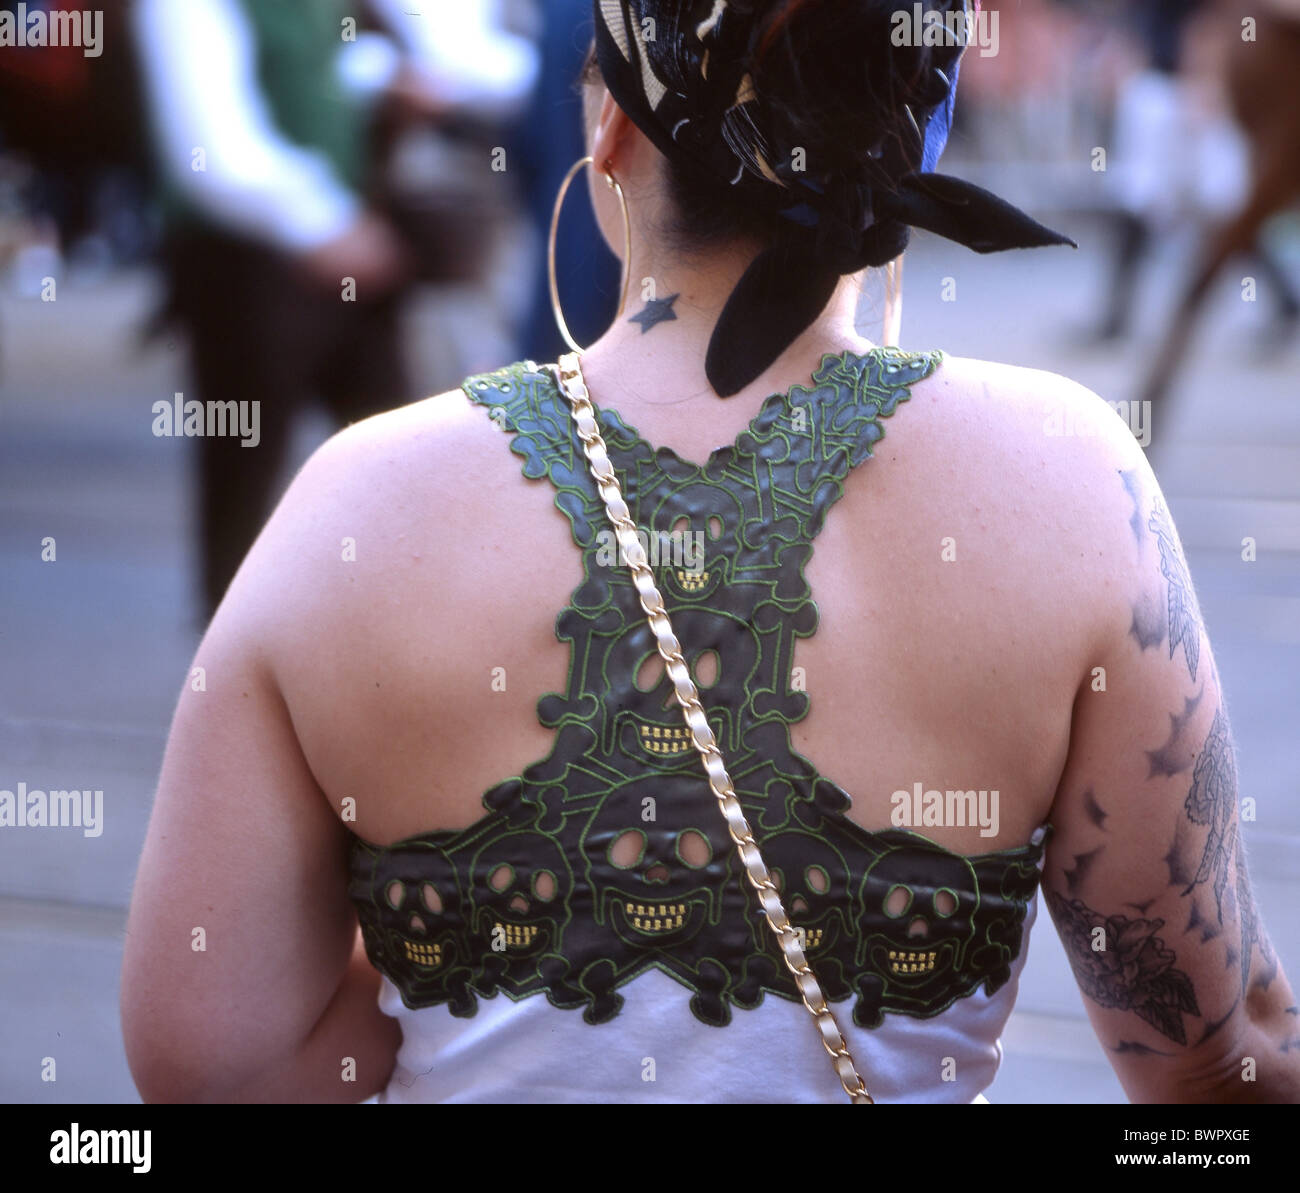 Schweiz Europa Frau Tuch Kleidung Schädel Mode von hinten zurück Sommer  Lifestyle tattoo Tätowierungen Stockfotografie - Alamy